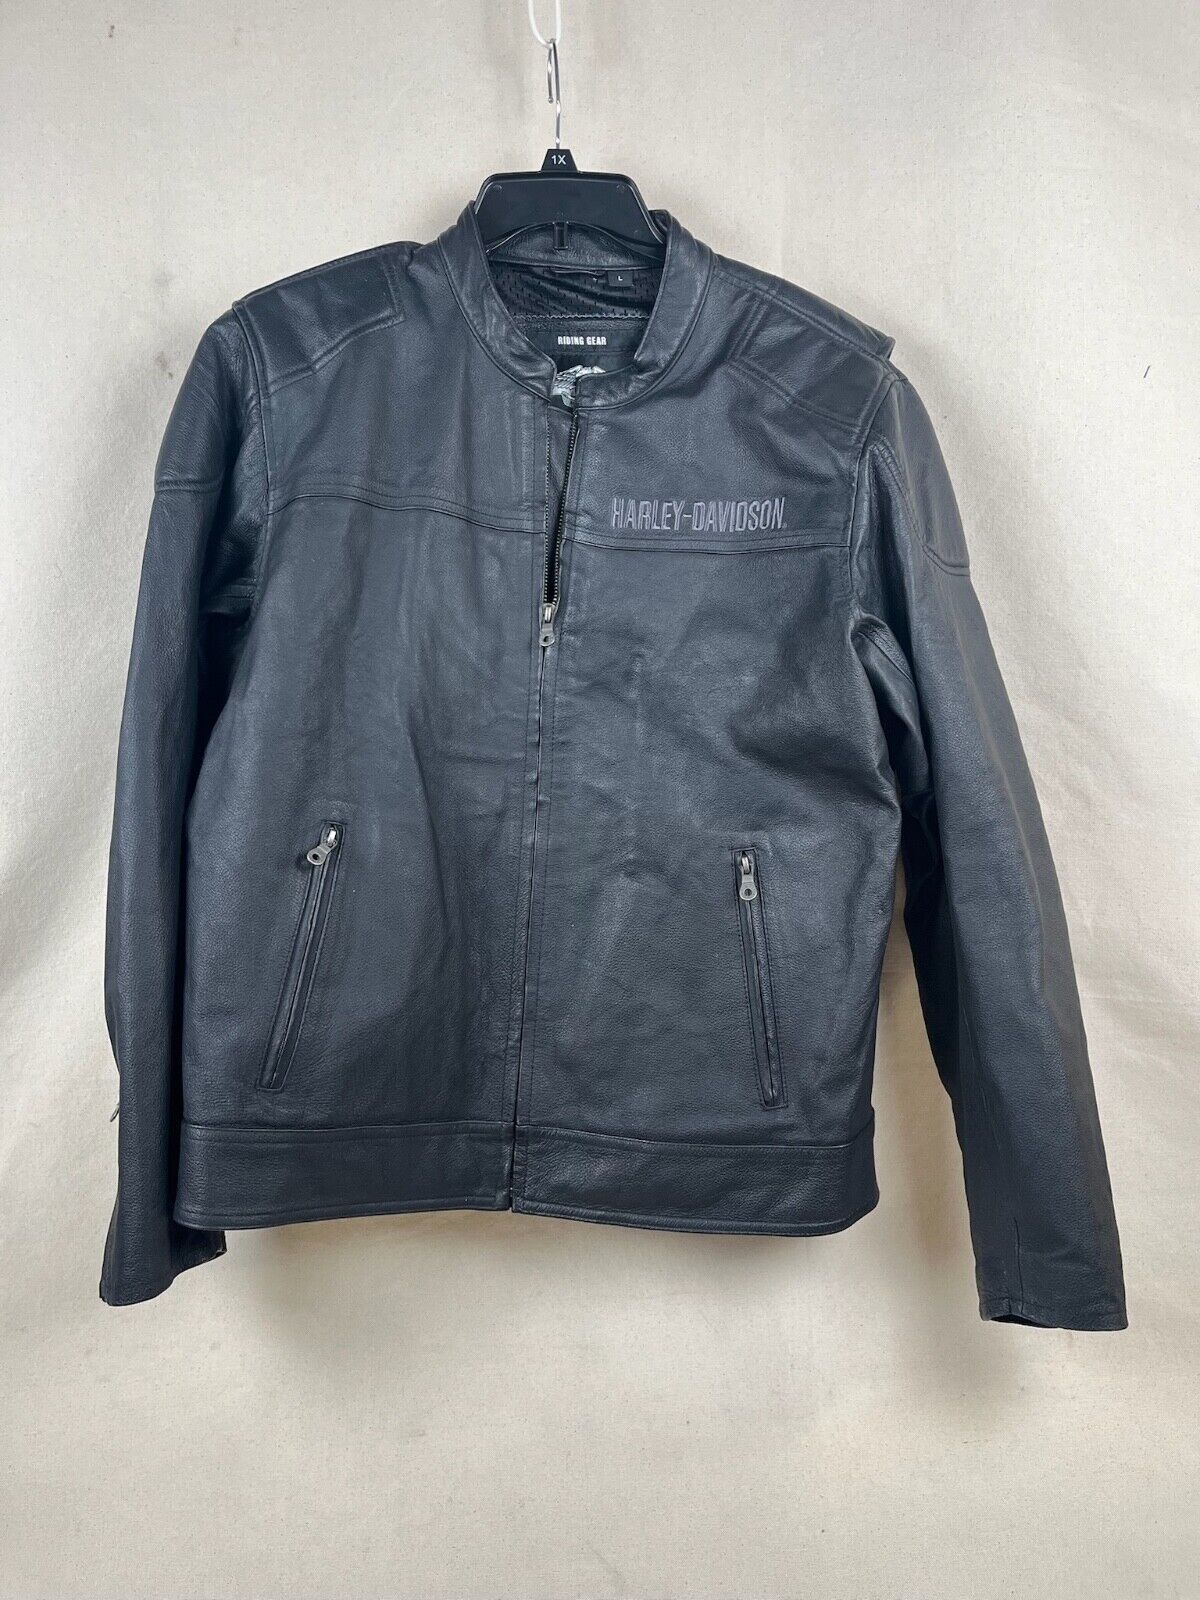 Vintage Harley Davidson Leather Riding Jacket Size L